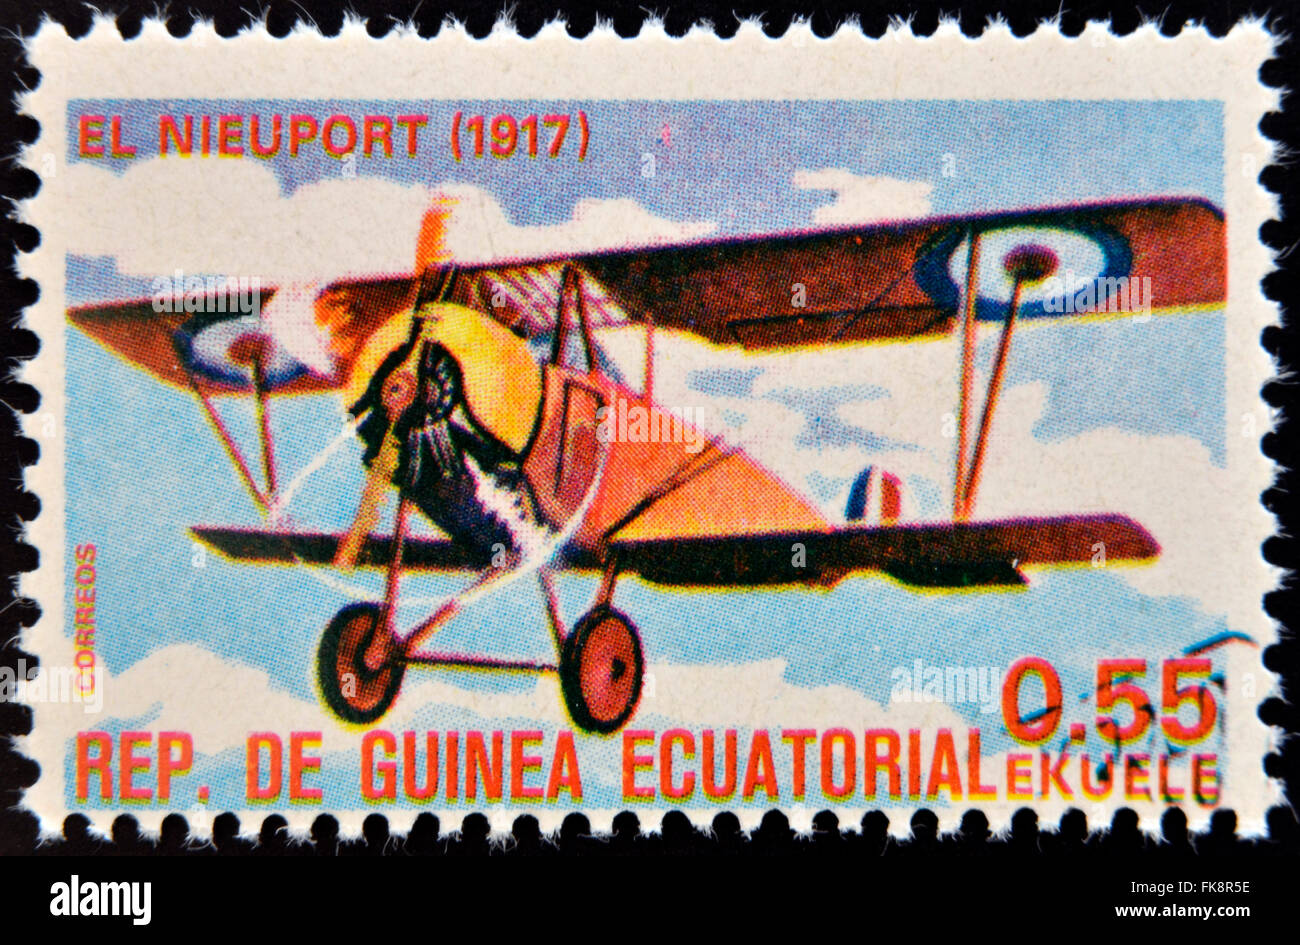 Guinée Équatoriale - circa 1974 : timbre imprimé en Guinée dédié à l'histoire de l'aviation présente Nieuport 11,1917, vers 1974 Banque D'Images